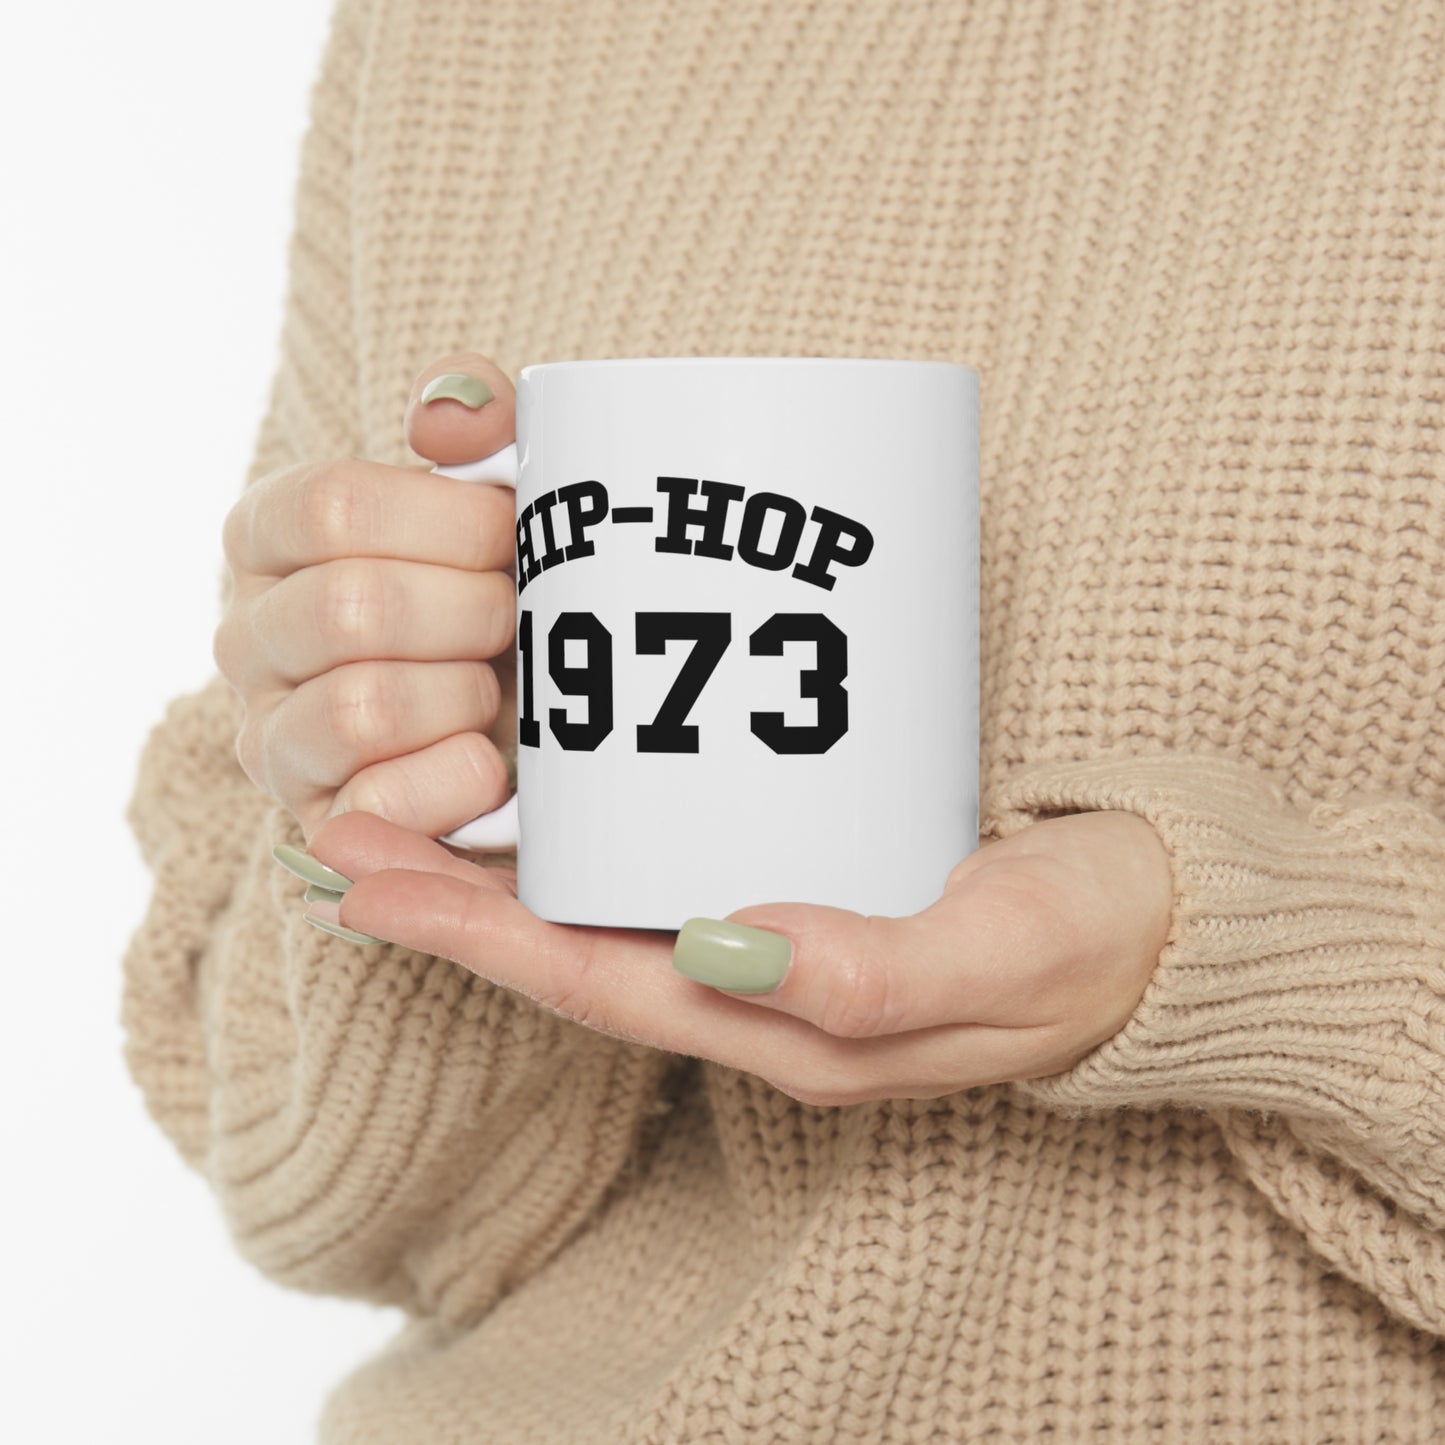 Hip-Hop 1973 Mug, Hip-Hop 50 Mug, Rap Music Mug, Hip-Hop 50th Mug, Hip-Hop Anniversary Mug, Rap Culture Mug, Urban Mug